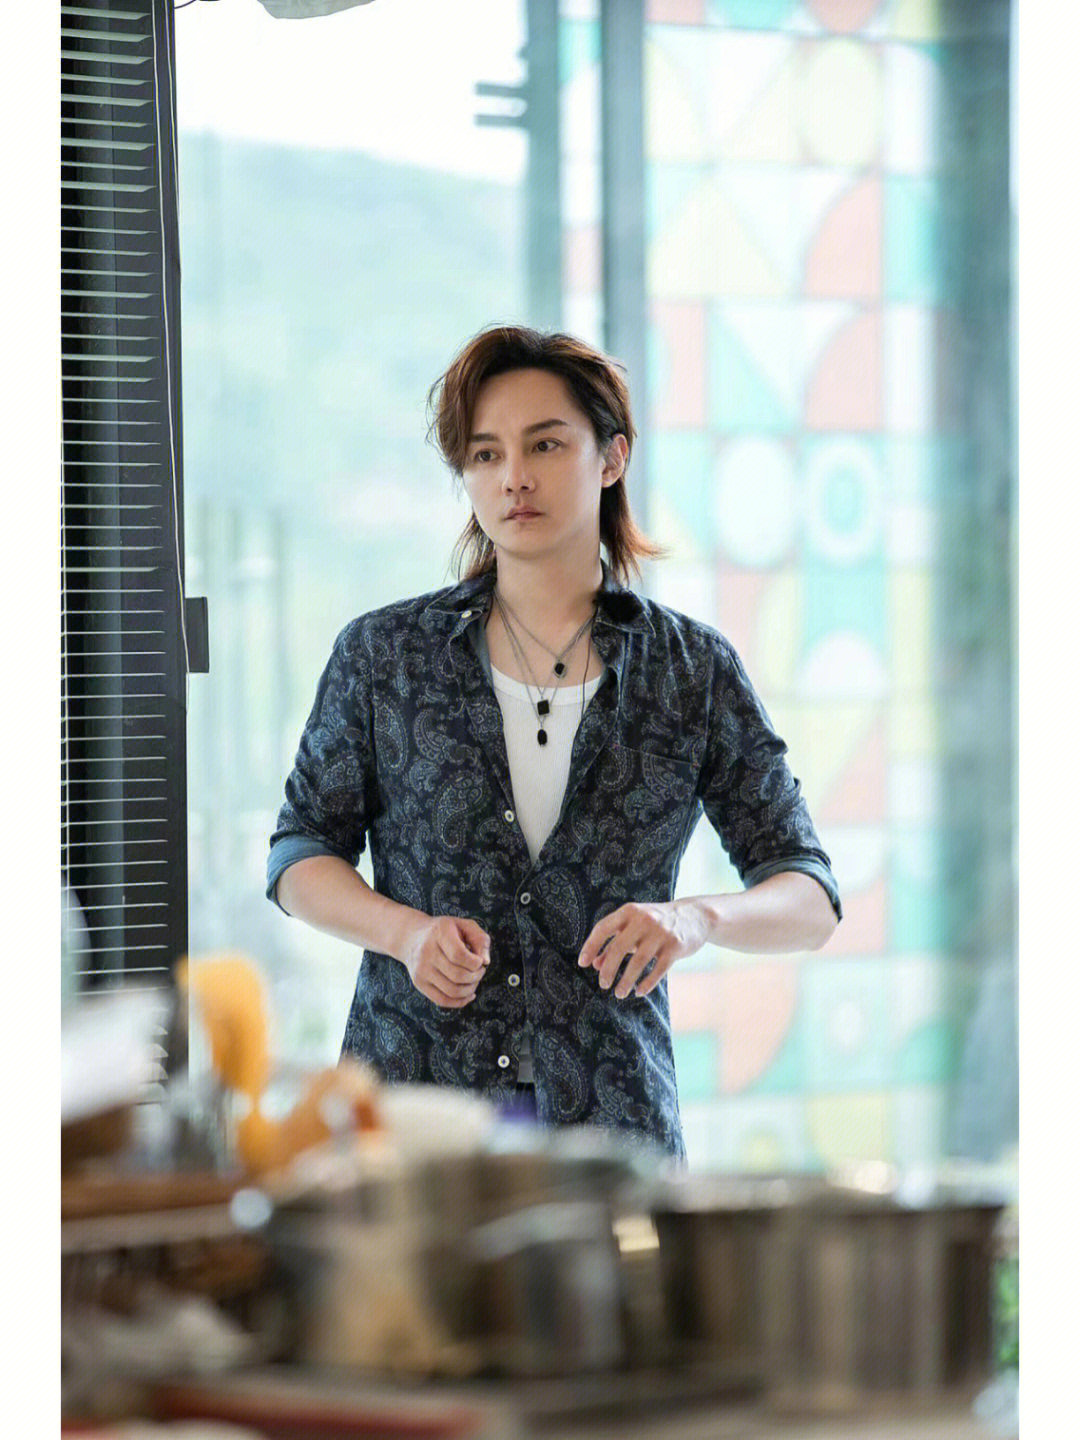 演员尹正身着kiton深蓝色印花衬衫